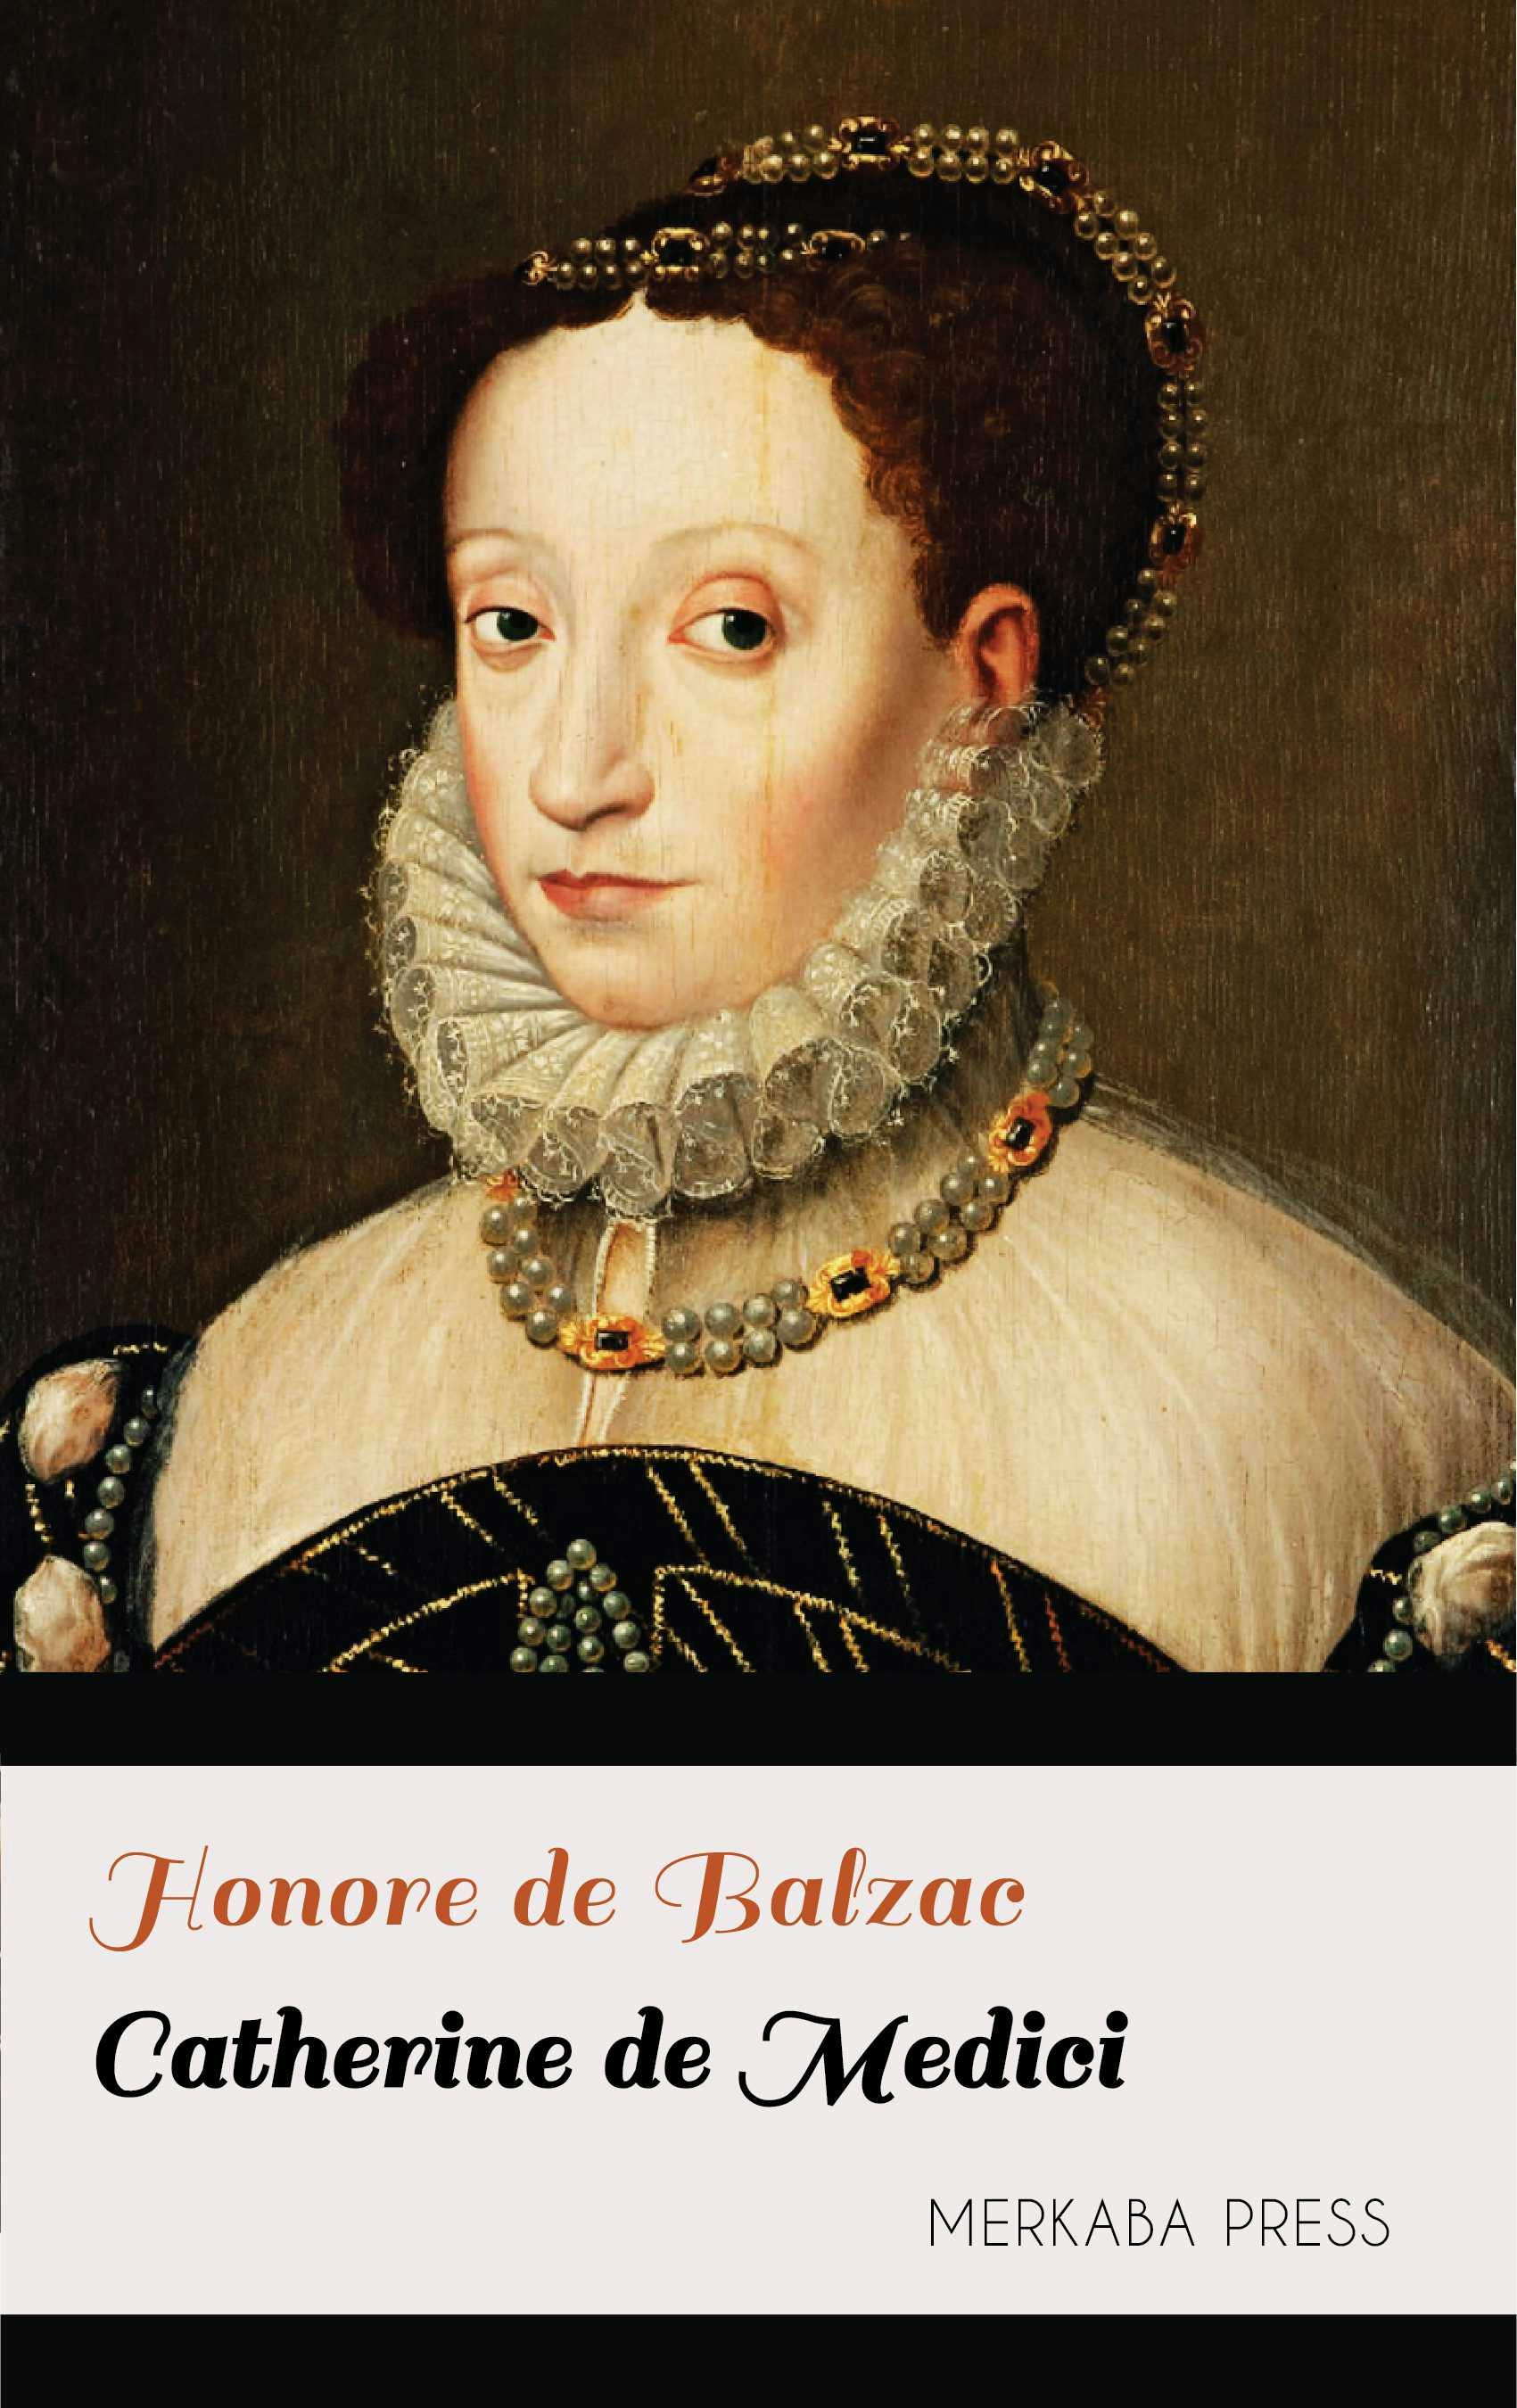 Catherine de Medici - undefined